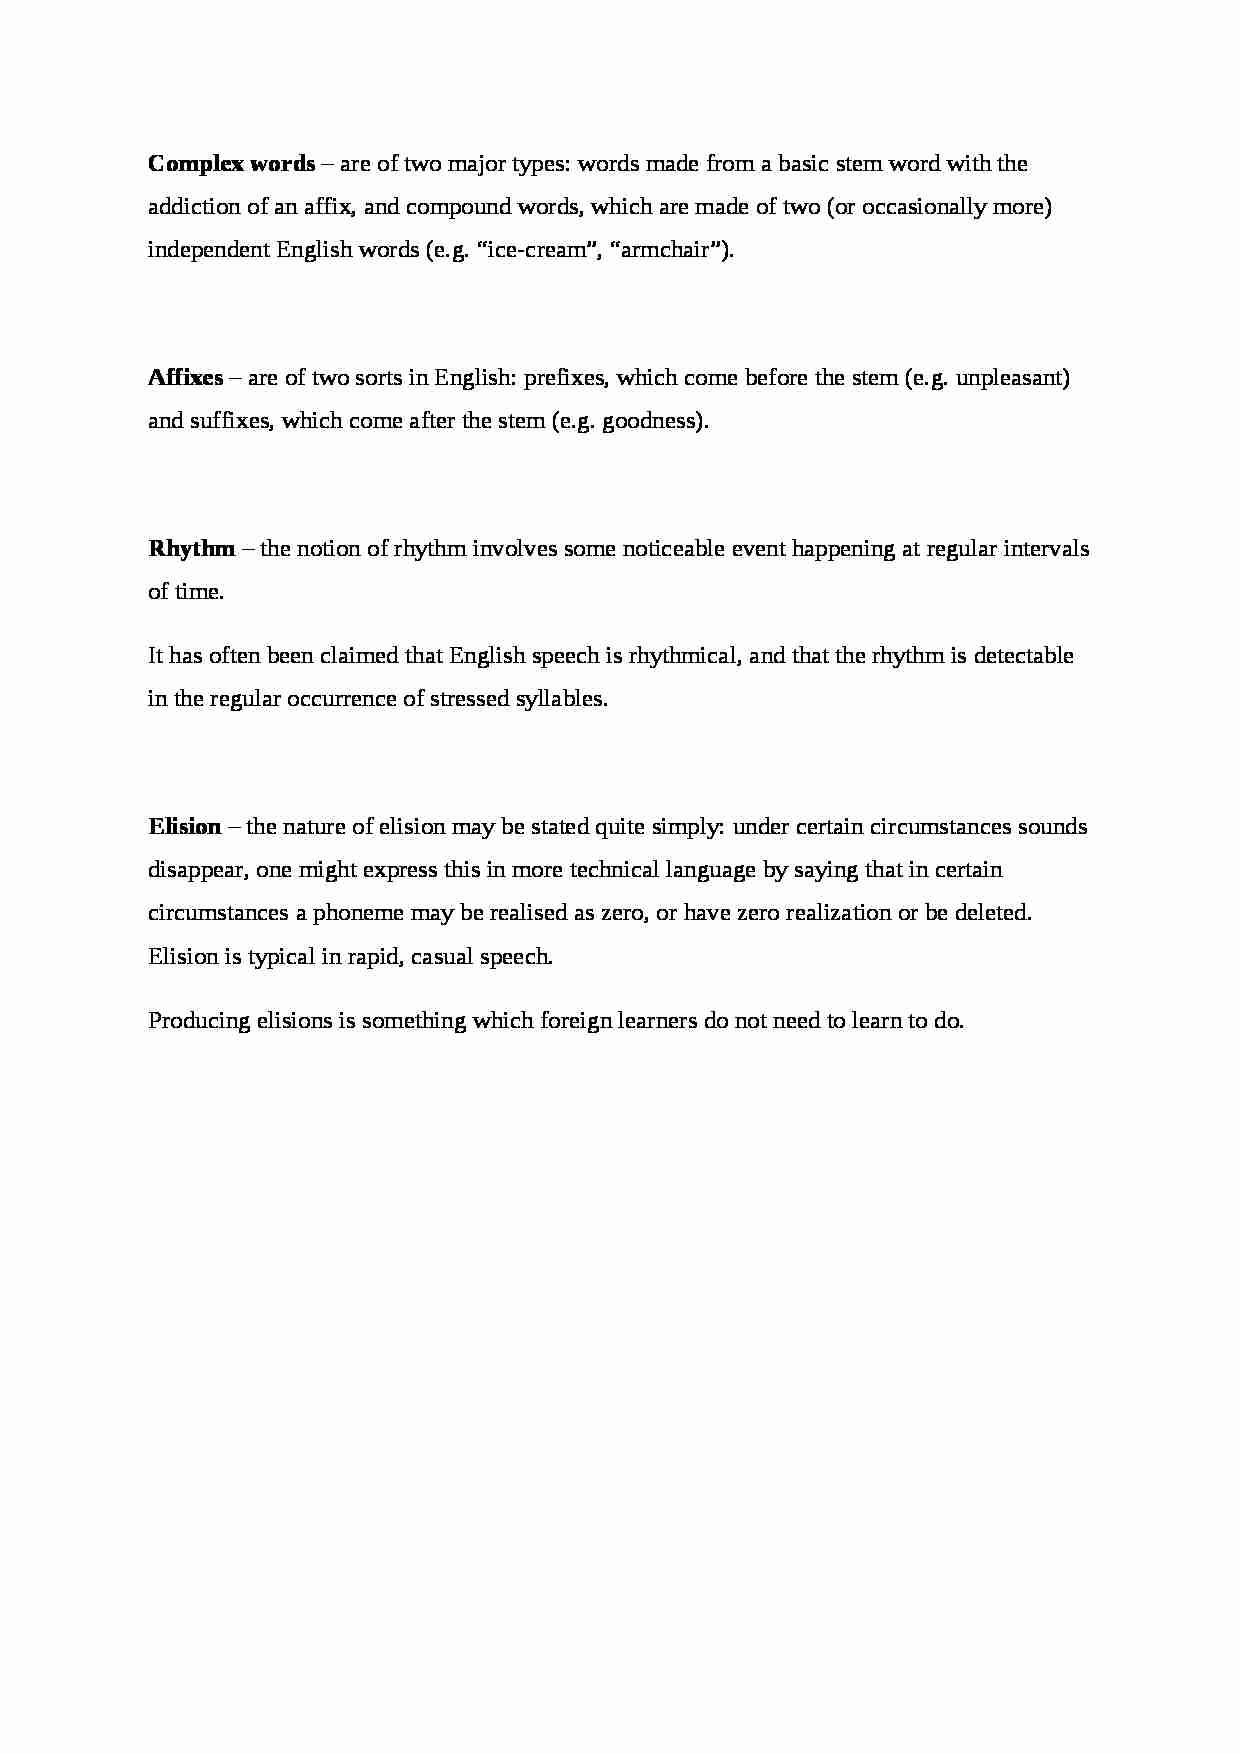 Complex words, affixes, rhythm, elision - definitions - strona 1